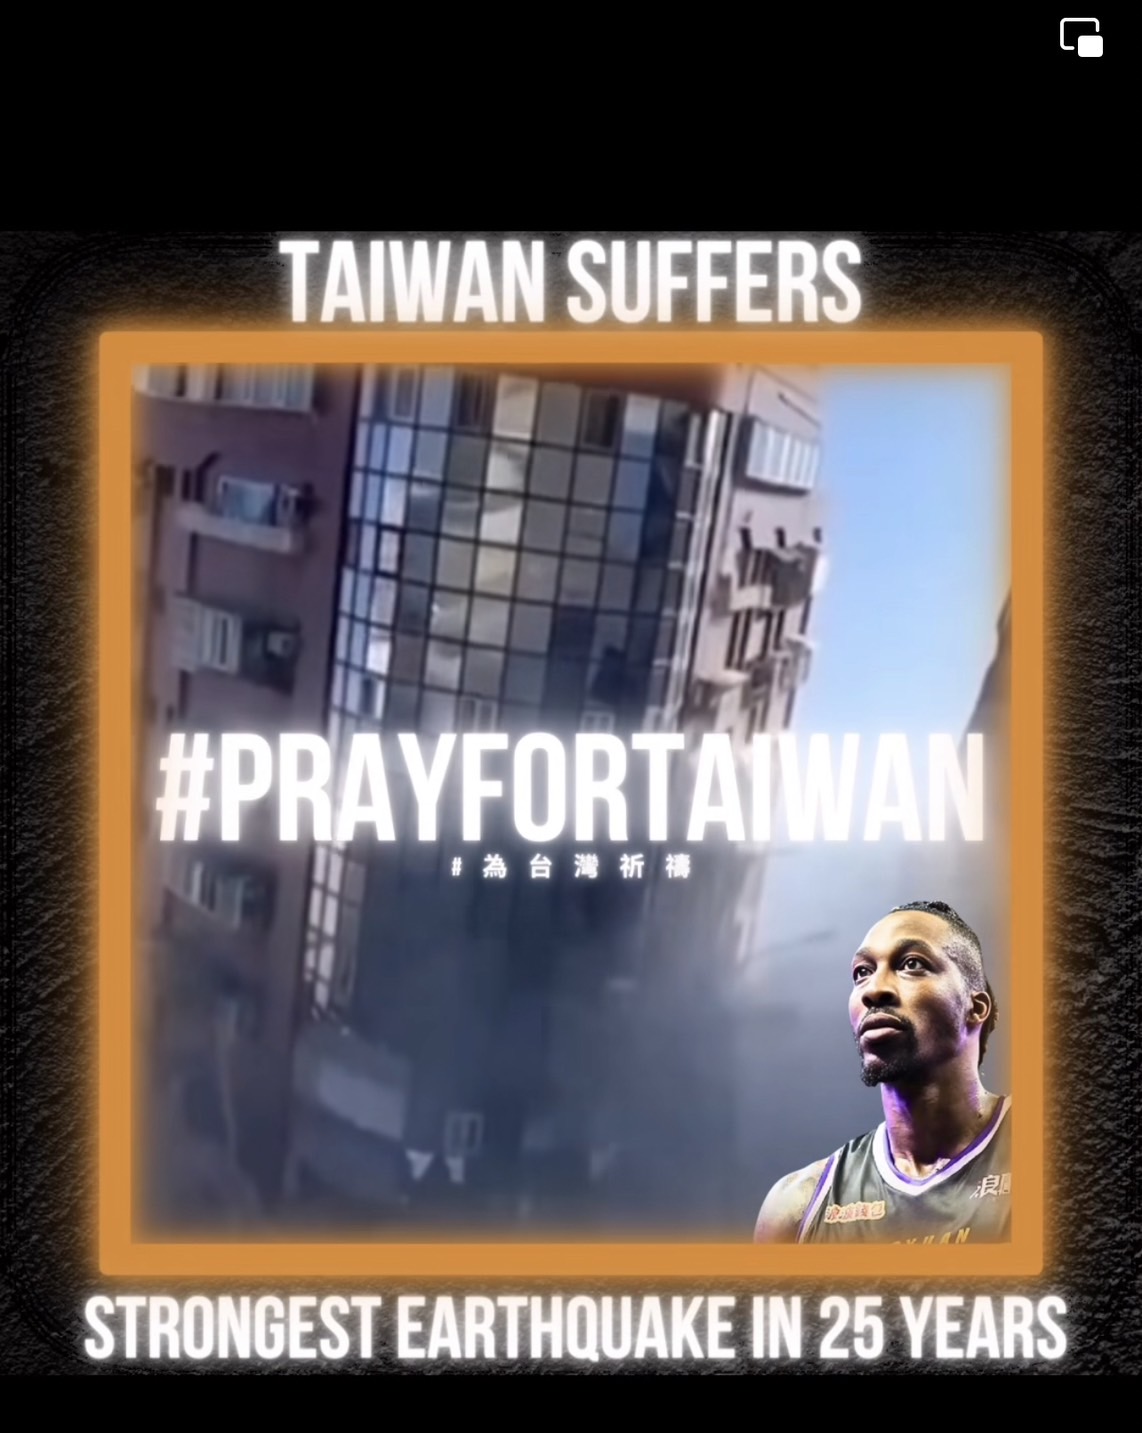 曾經效命T1聯盟雲豹隊的NBA明星霍華德發文為台灣祈福。 圖/取自魔獸霍華德臉書